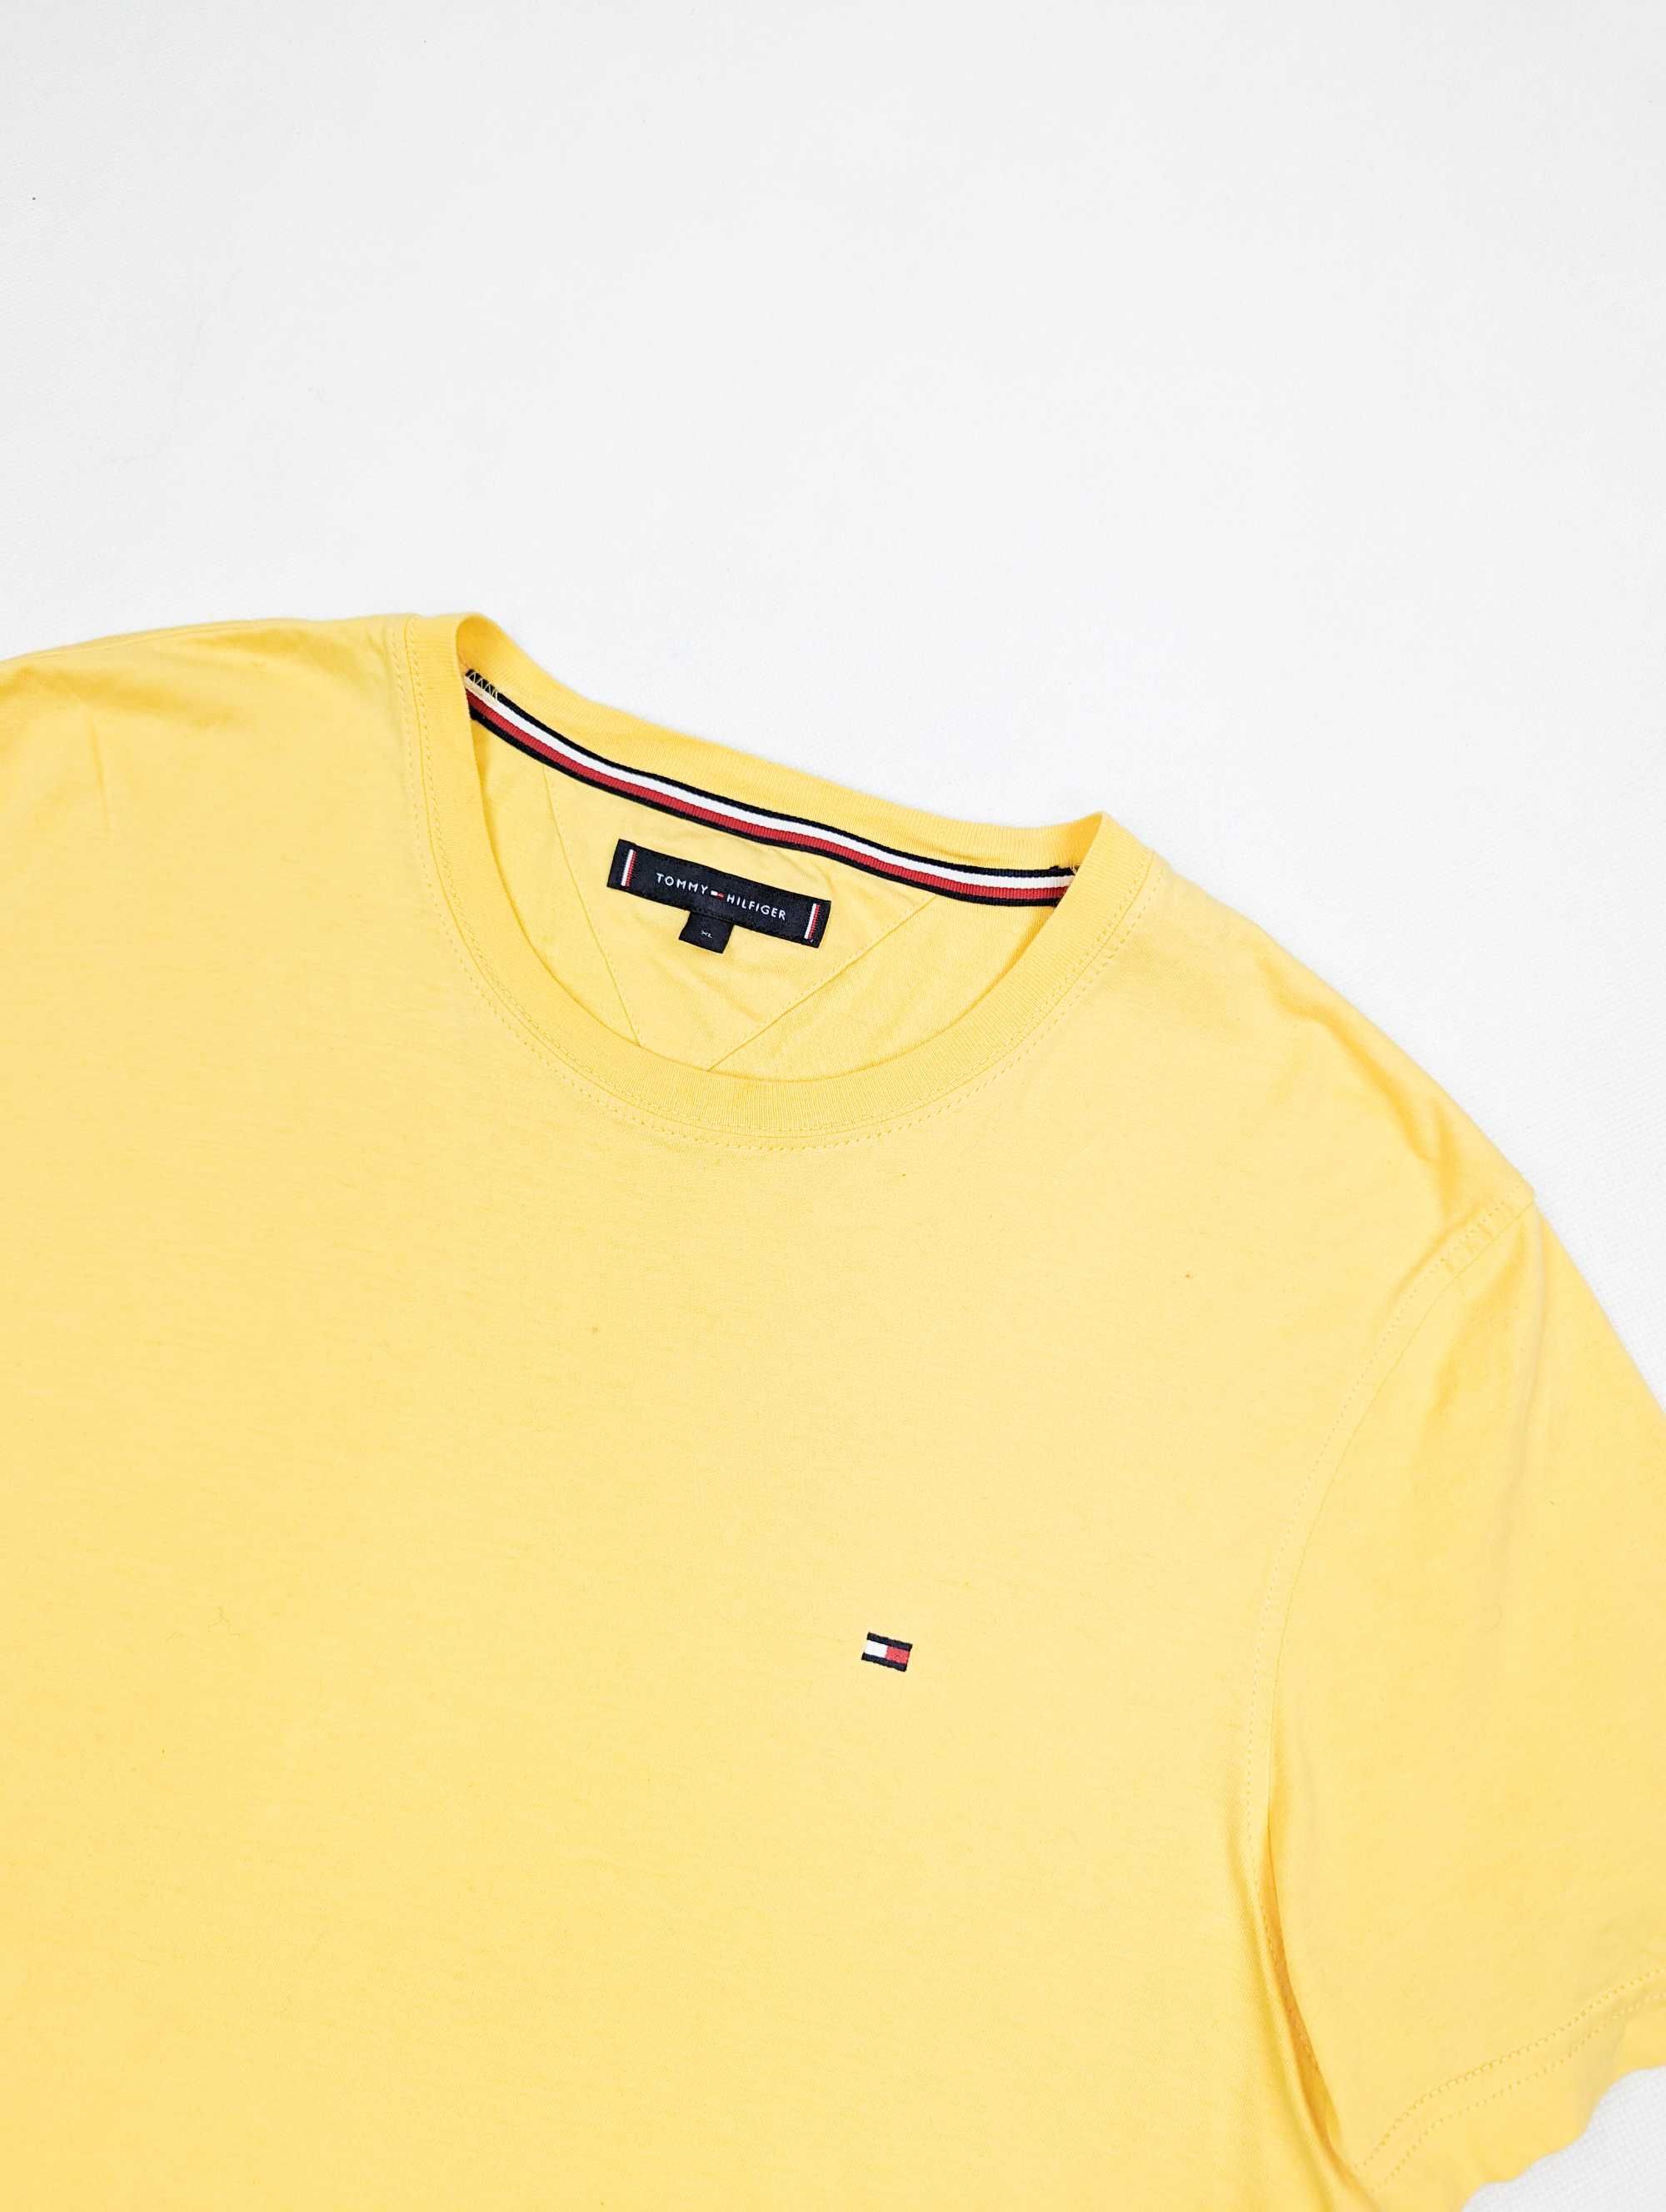 Tommy Hilfiger żółta koszulka t-shirt XL logo